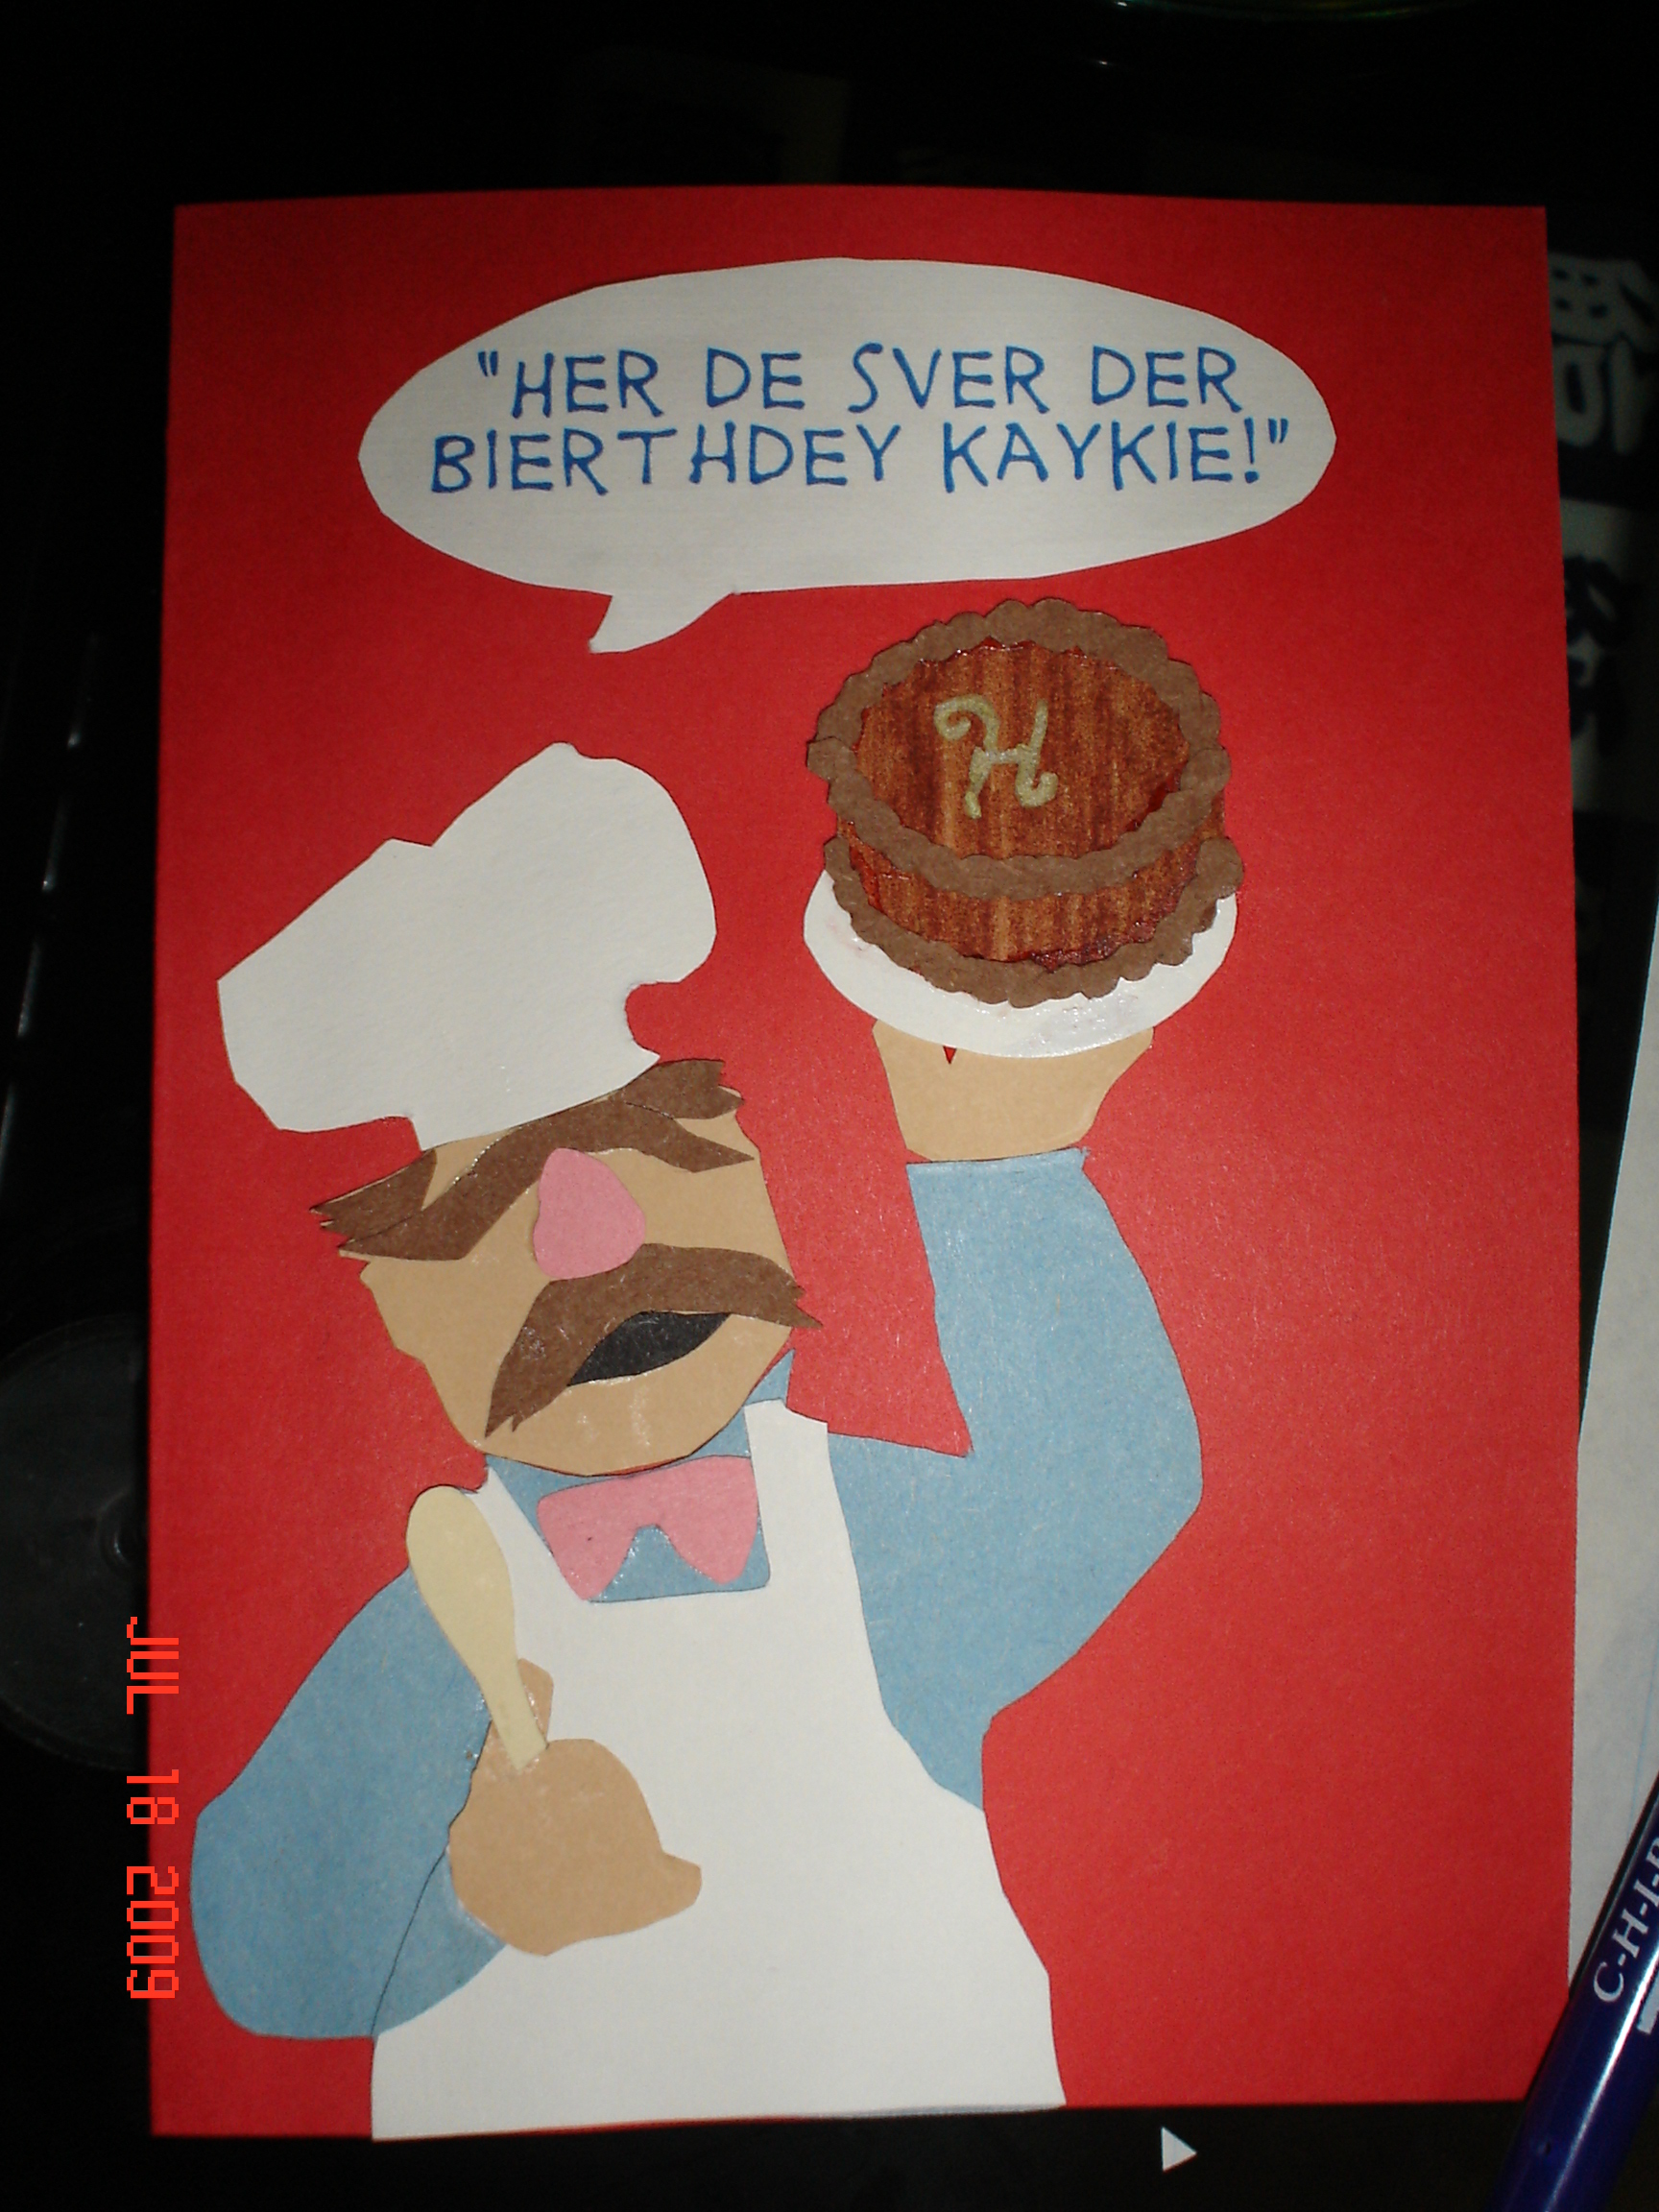 http://orig14.deviantart.net/32c9/f/2010/248/1/2/swedish_chef_birthday_card_by_chronia-d2y4gnw.jpg